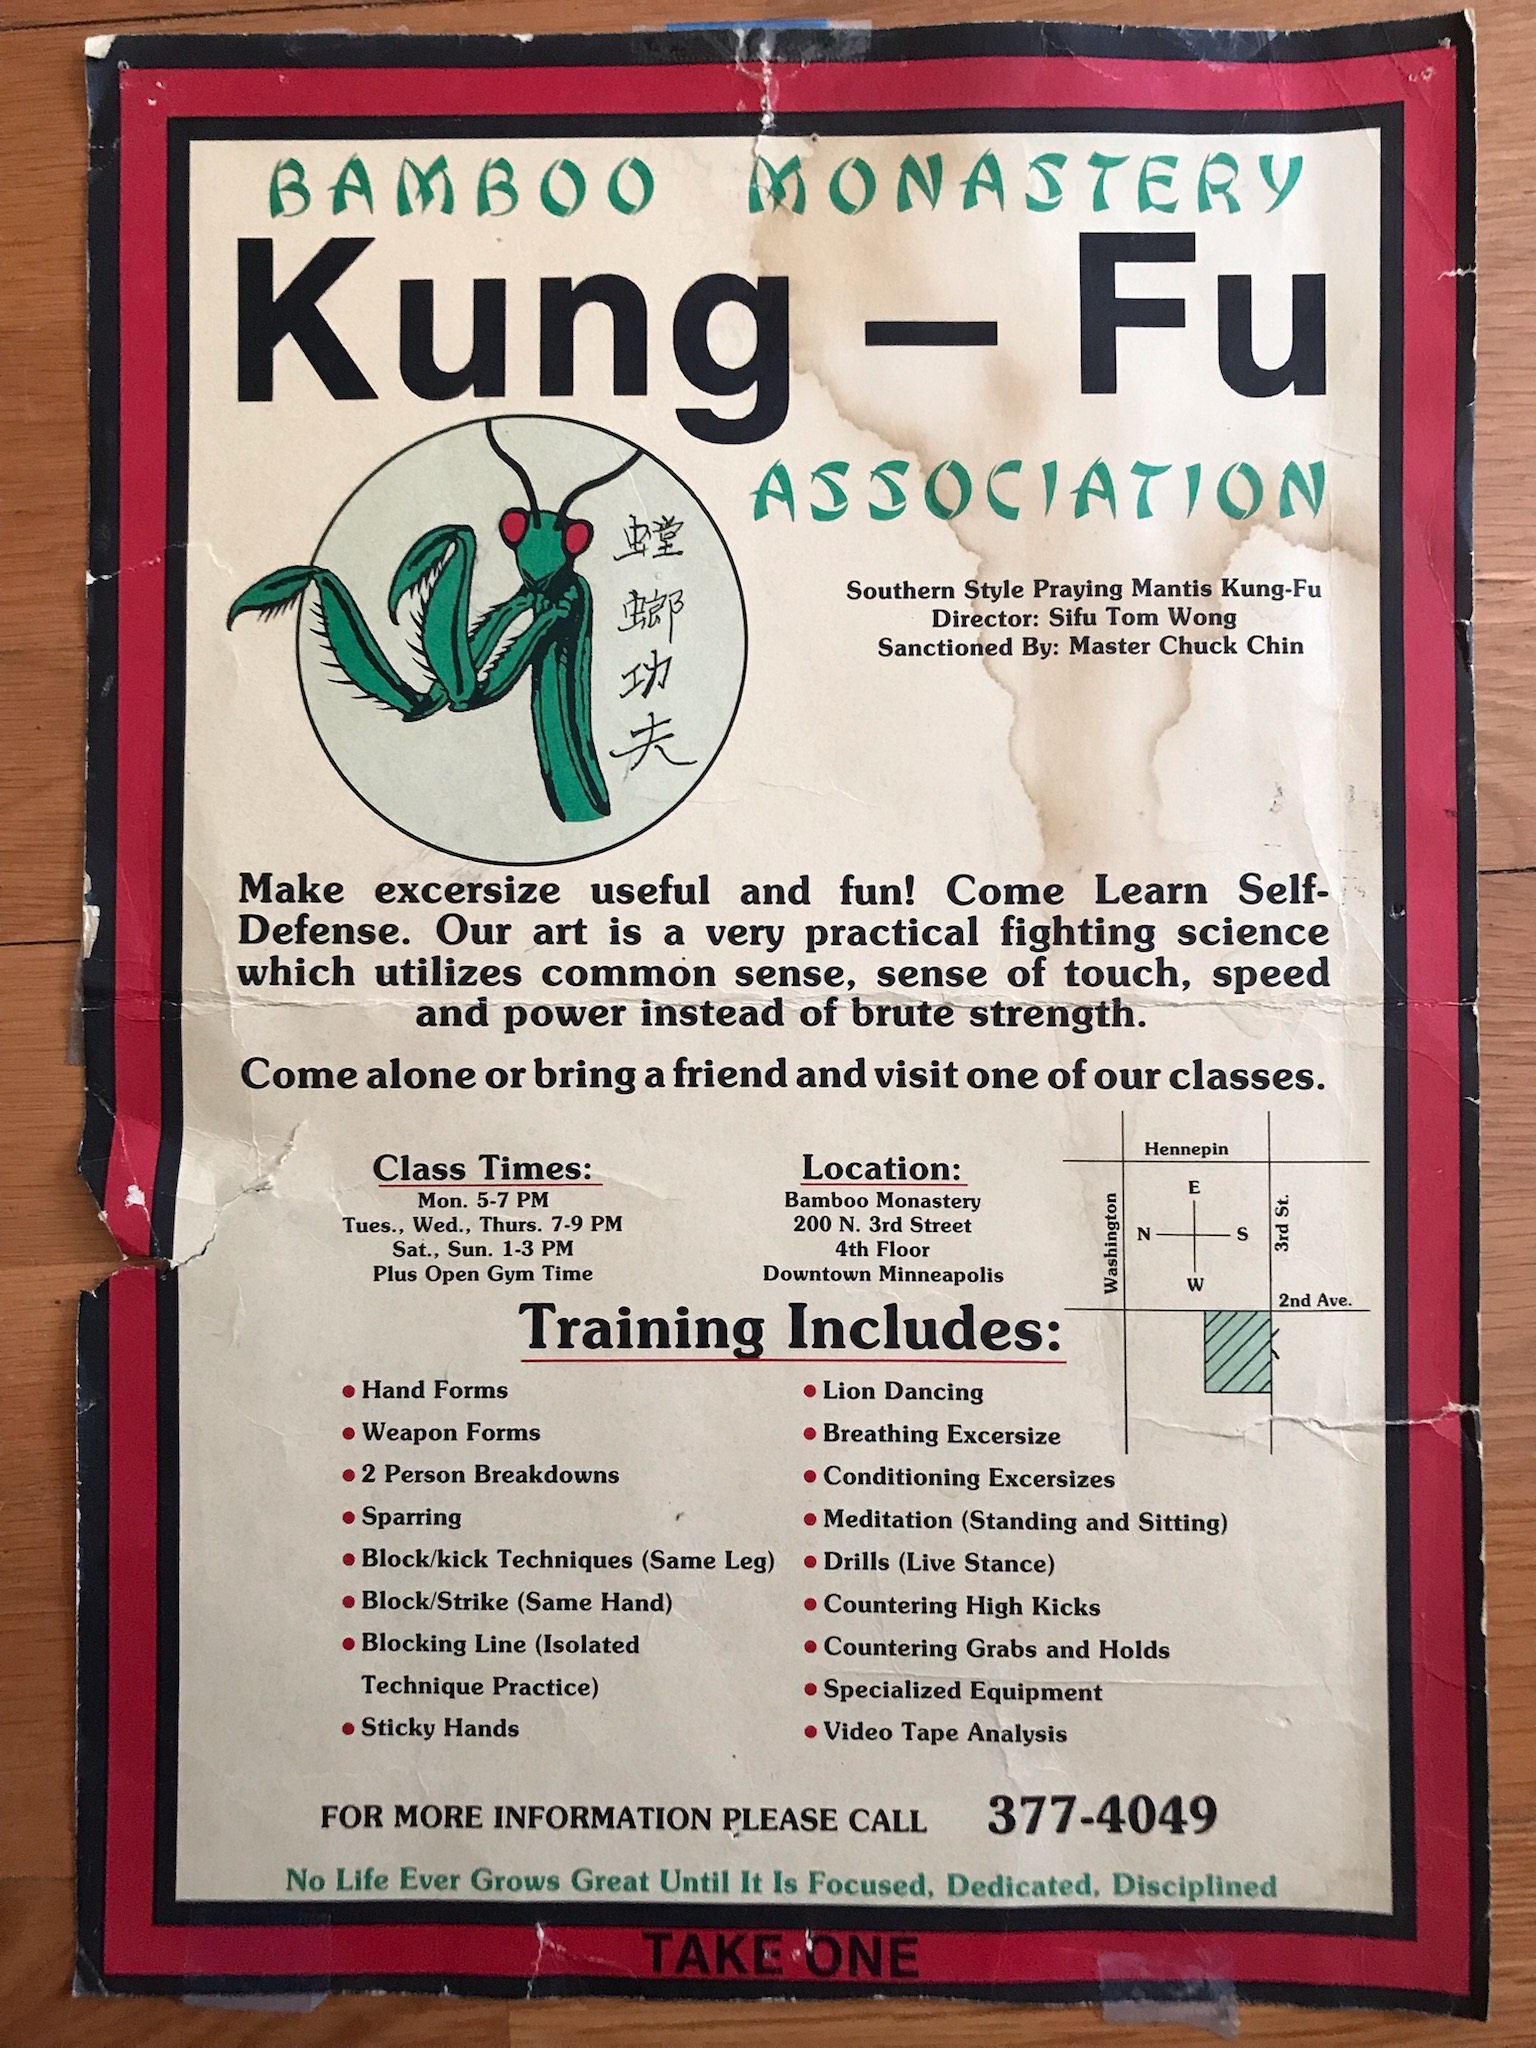 Bamboo Monastery recruitment poster (circa 1970s)